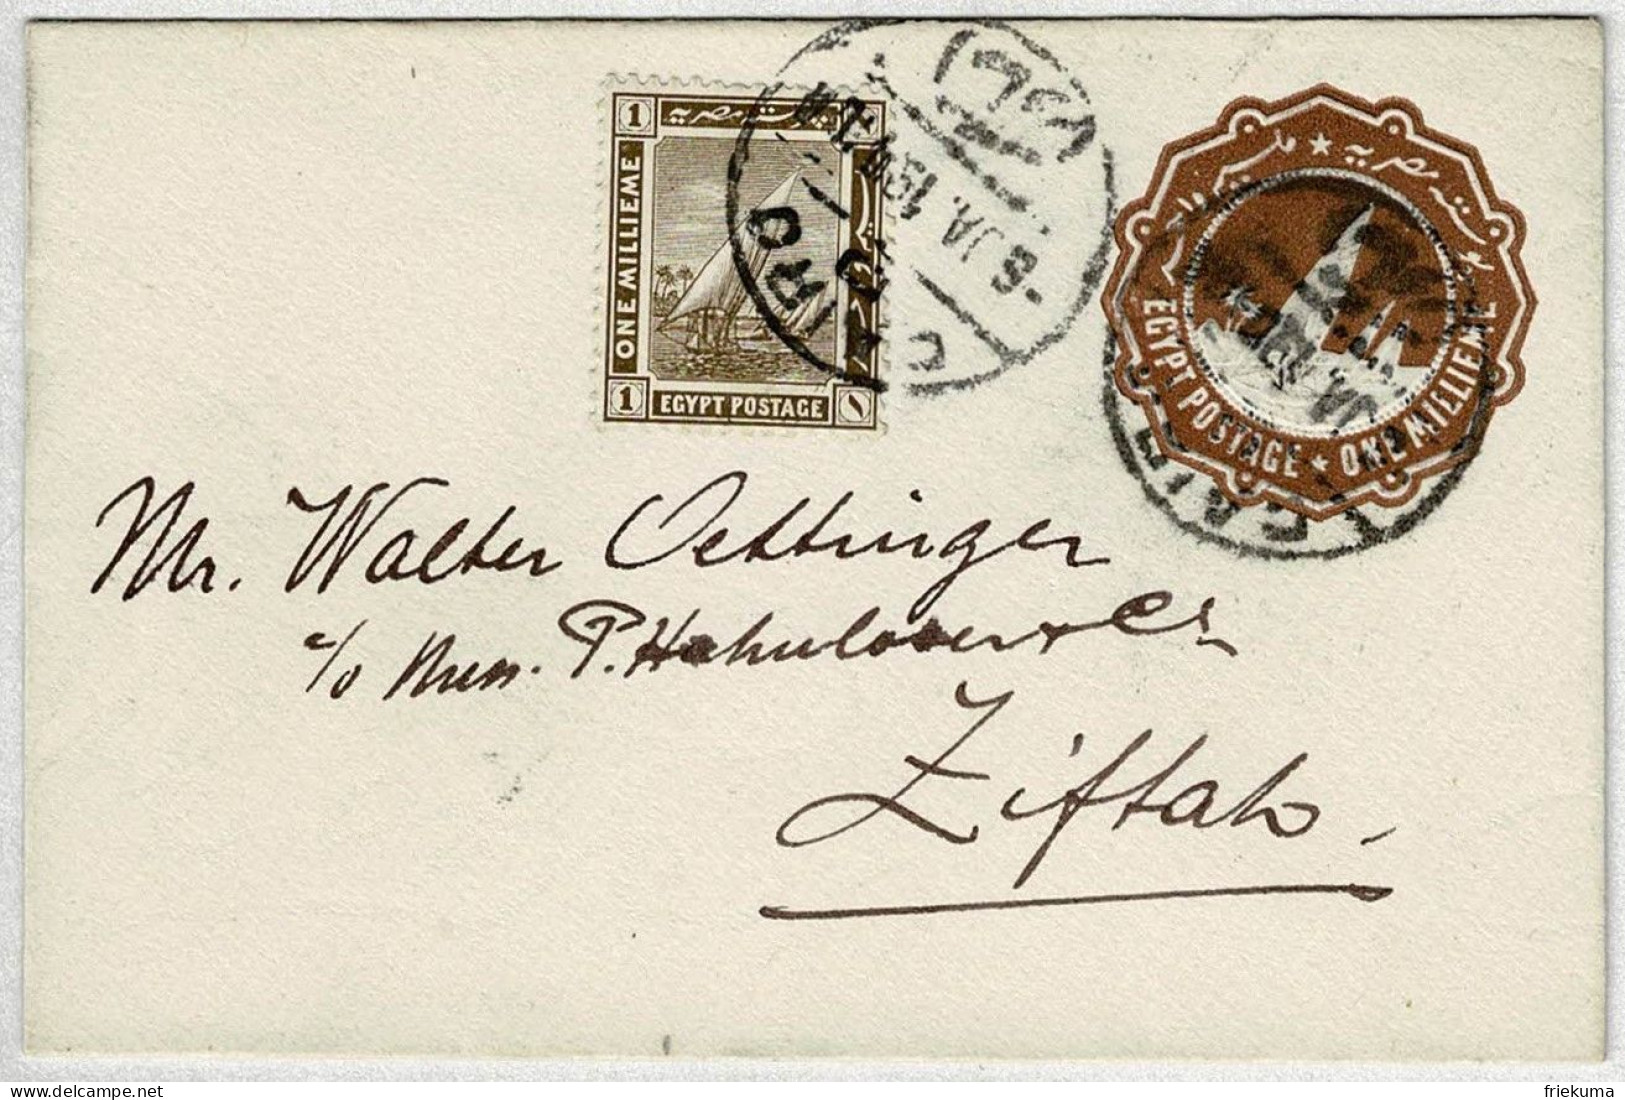 Aegypten / Egypt Postage 1919, Ganzsachen-Brief / Stationery Cairo - Zifta, Segelboote / Sailing Boats - 1915-1921 Britischer Schutzstaat